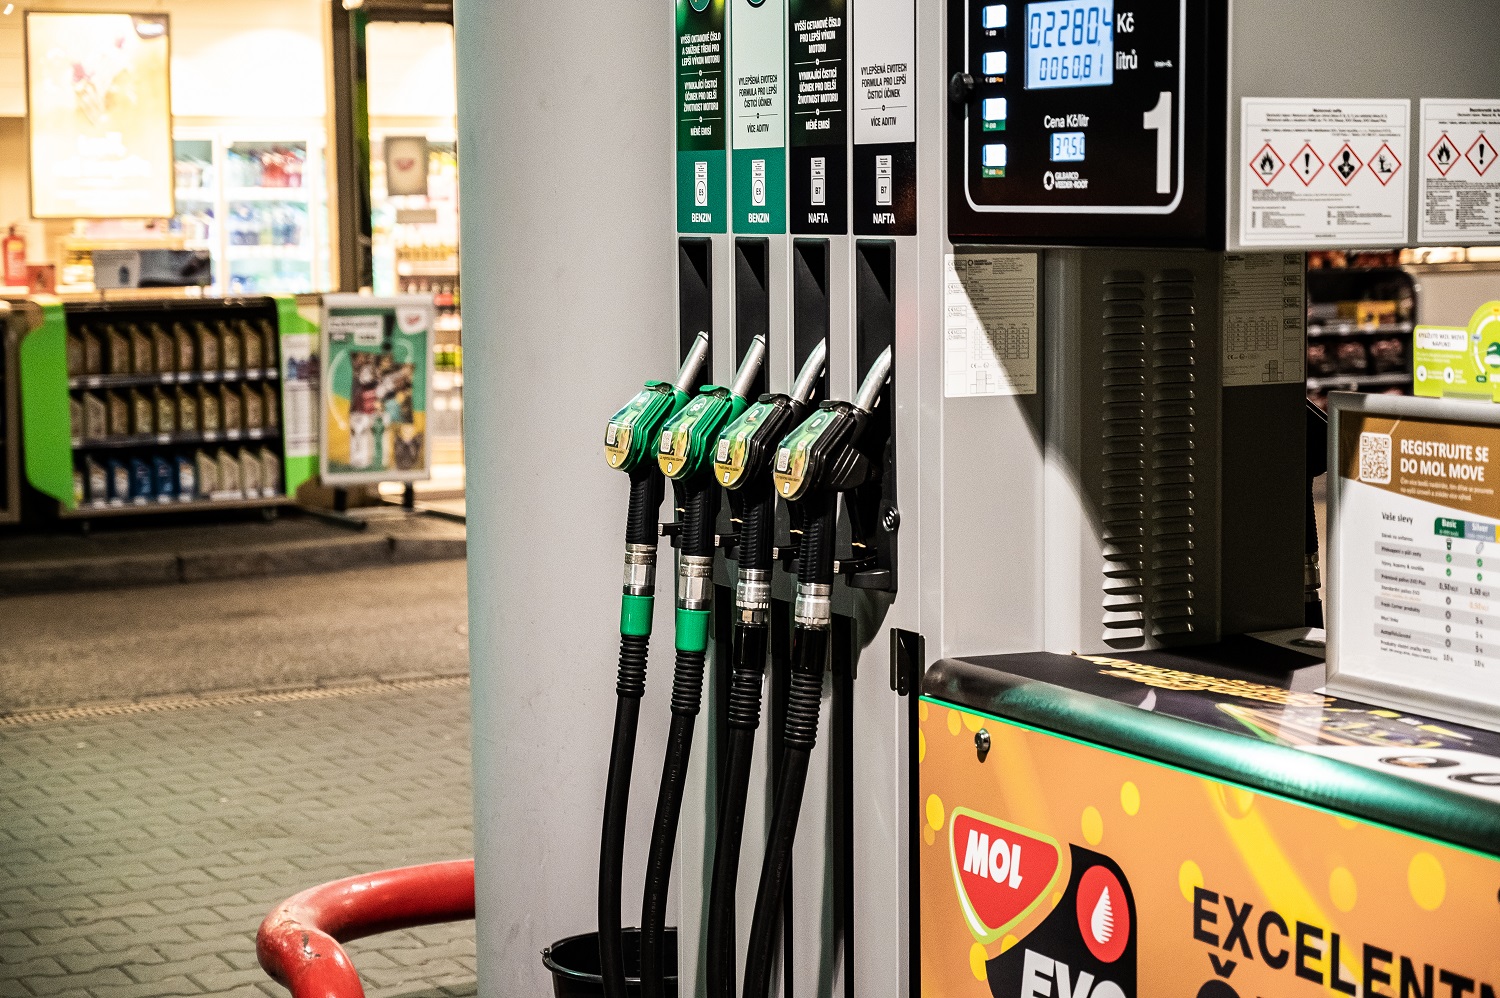 pohonné hmoty mají zlevňovat kvůli poklesu cen ropy